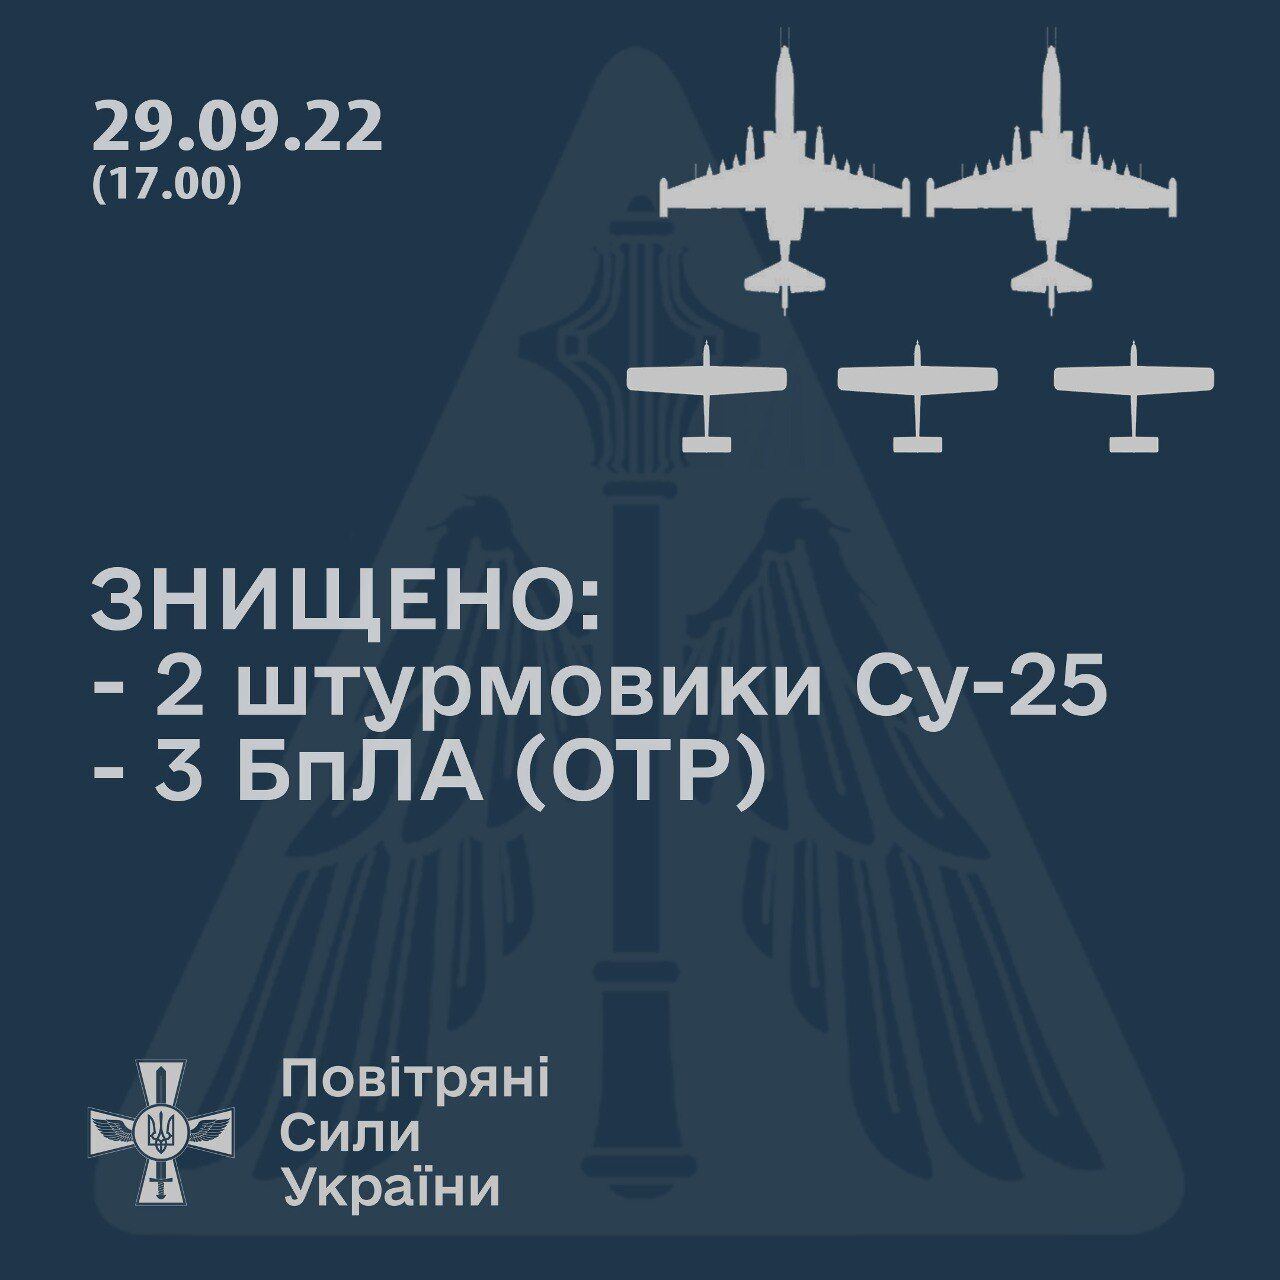 Украинские зенитчики "приземлили" два вражеских Су-25 в Николаевской области